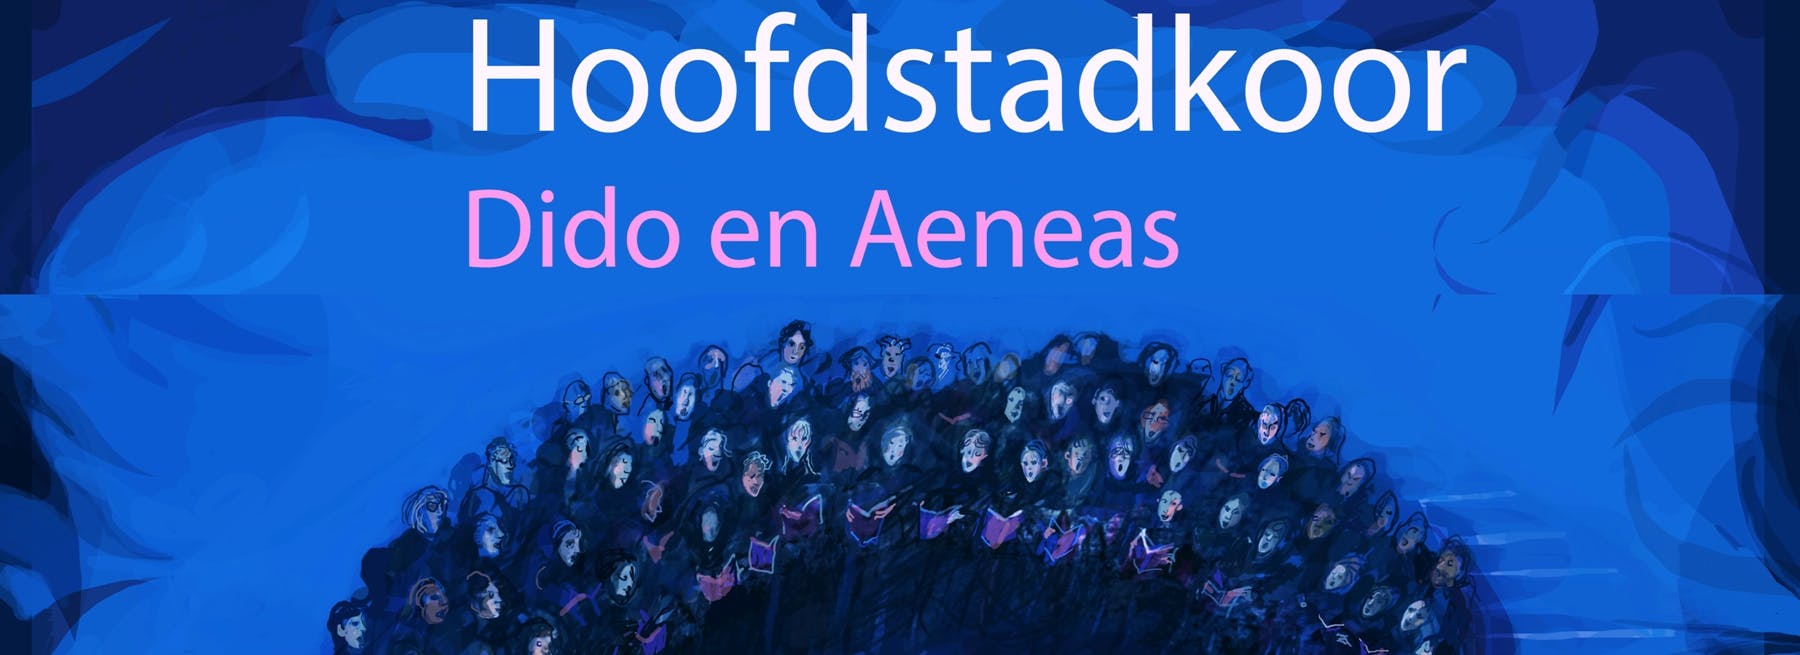 Hoofdstadkoor - Dido en Aeneas + The Fairy Queen van Henry Purcell